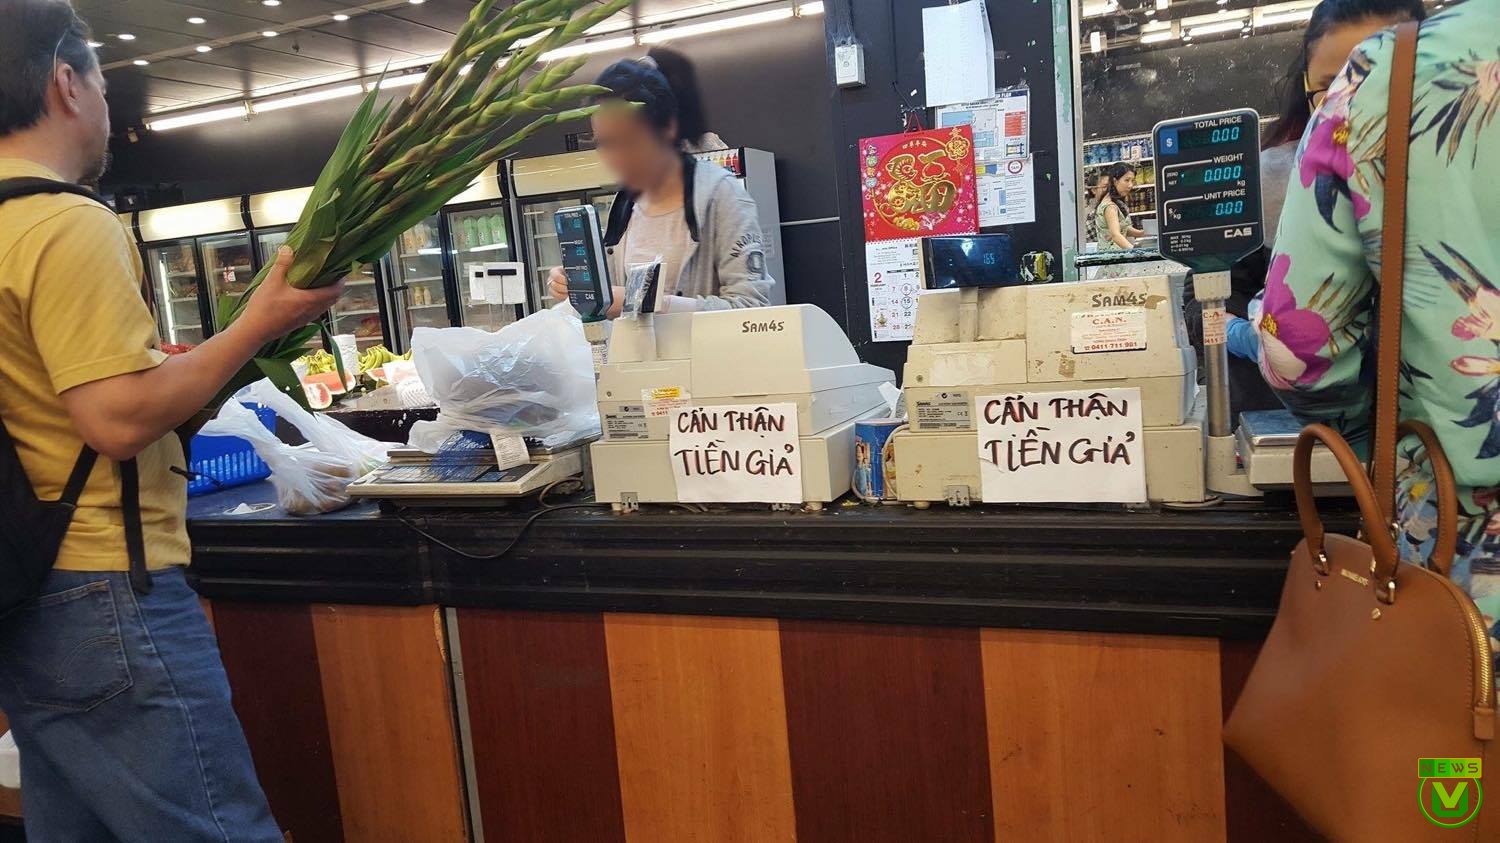 Hiện nay,đã có một số chợ người Việt tại Melbourne treo bảng cảnh báo tiền giả đến người tiêu dùng. 